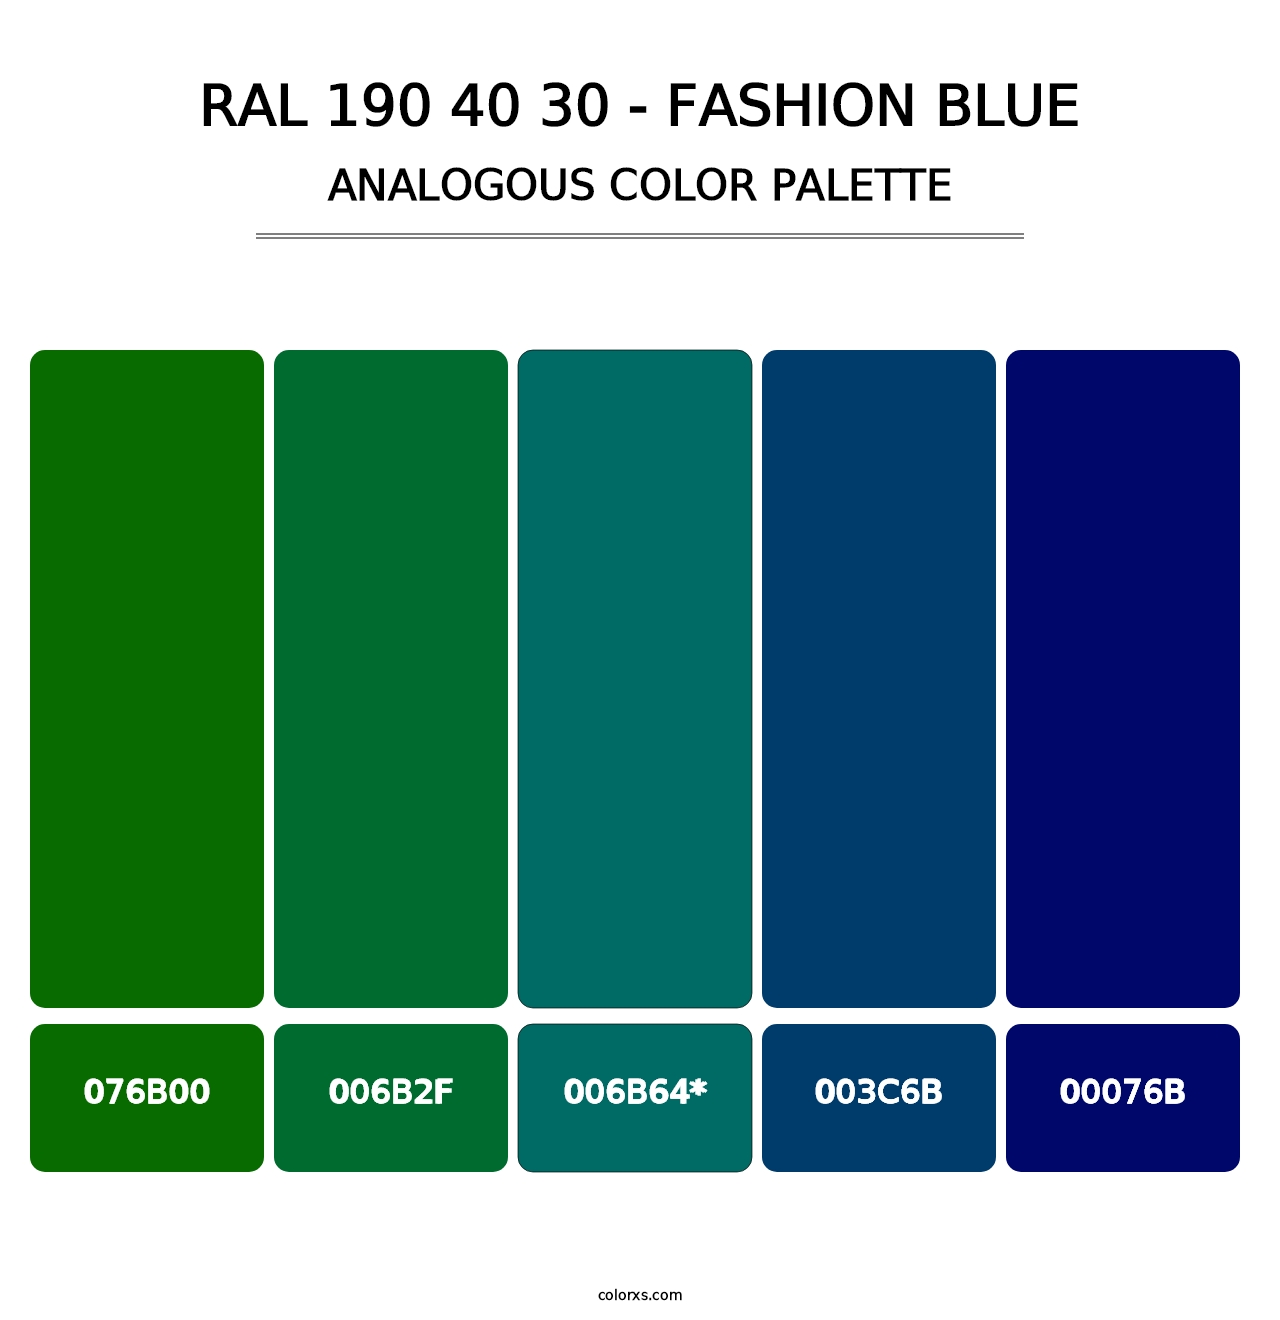 RAL 190 40 30 - Fashion Blue - Analogous Color Palette